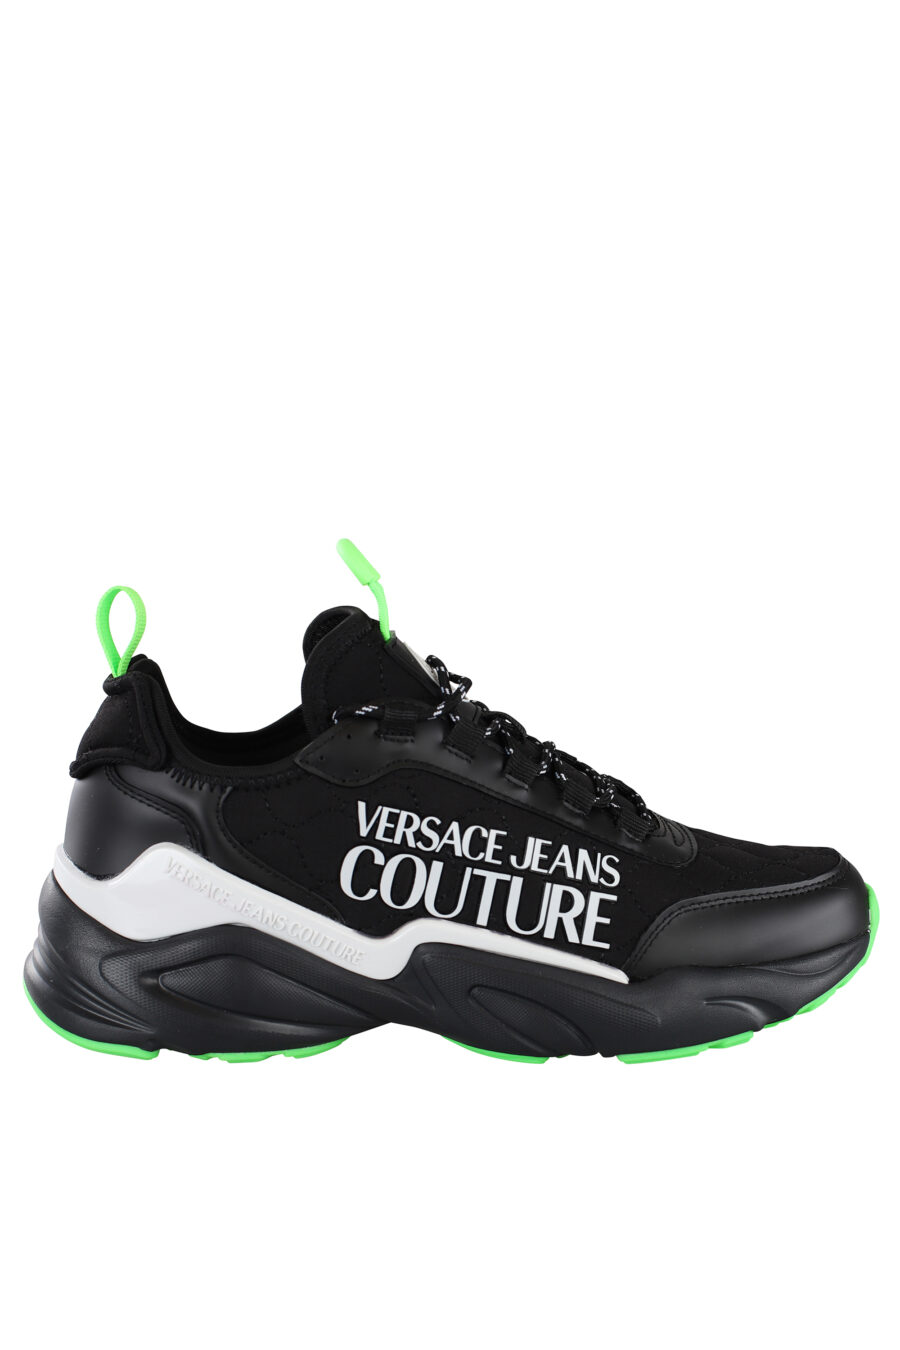 Zapatillas negras con detalles verdes y maxilogo blanco - IMG 6892